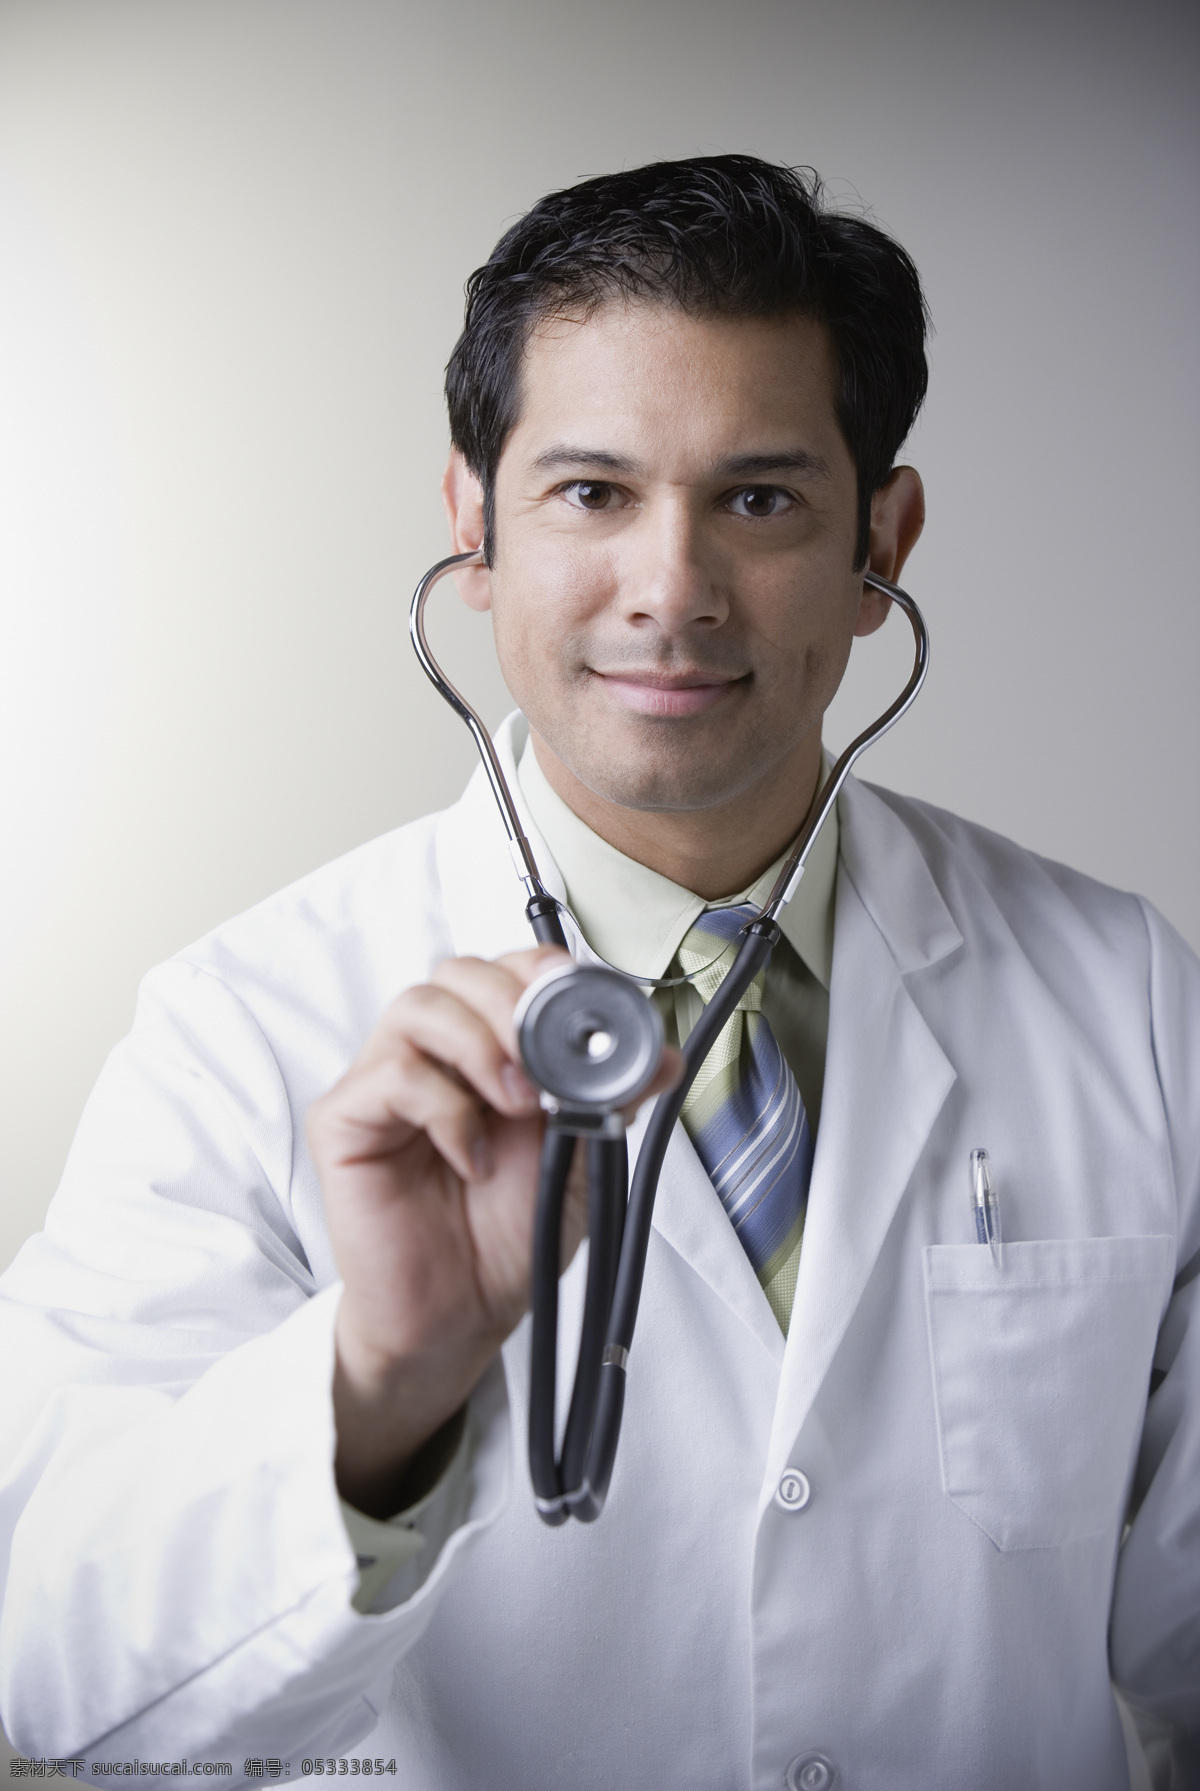 戴 听诊器 医生 男性男人 外国男人 人物摄影 外国医生 男人图片 人物图片